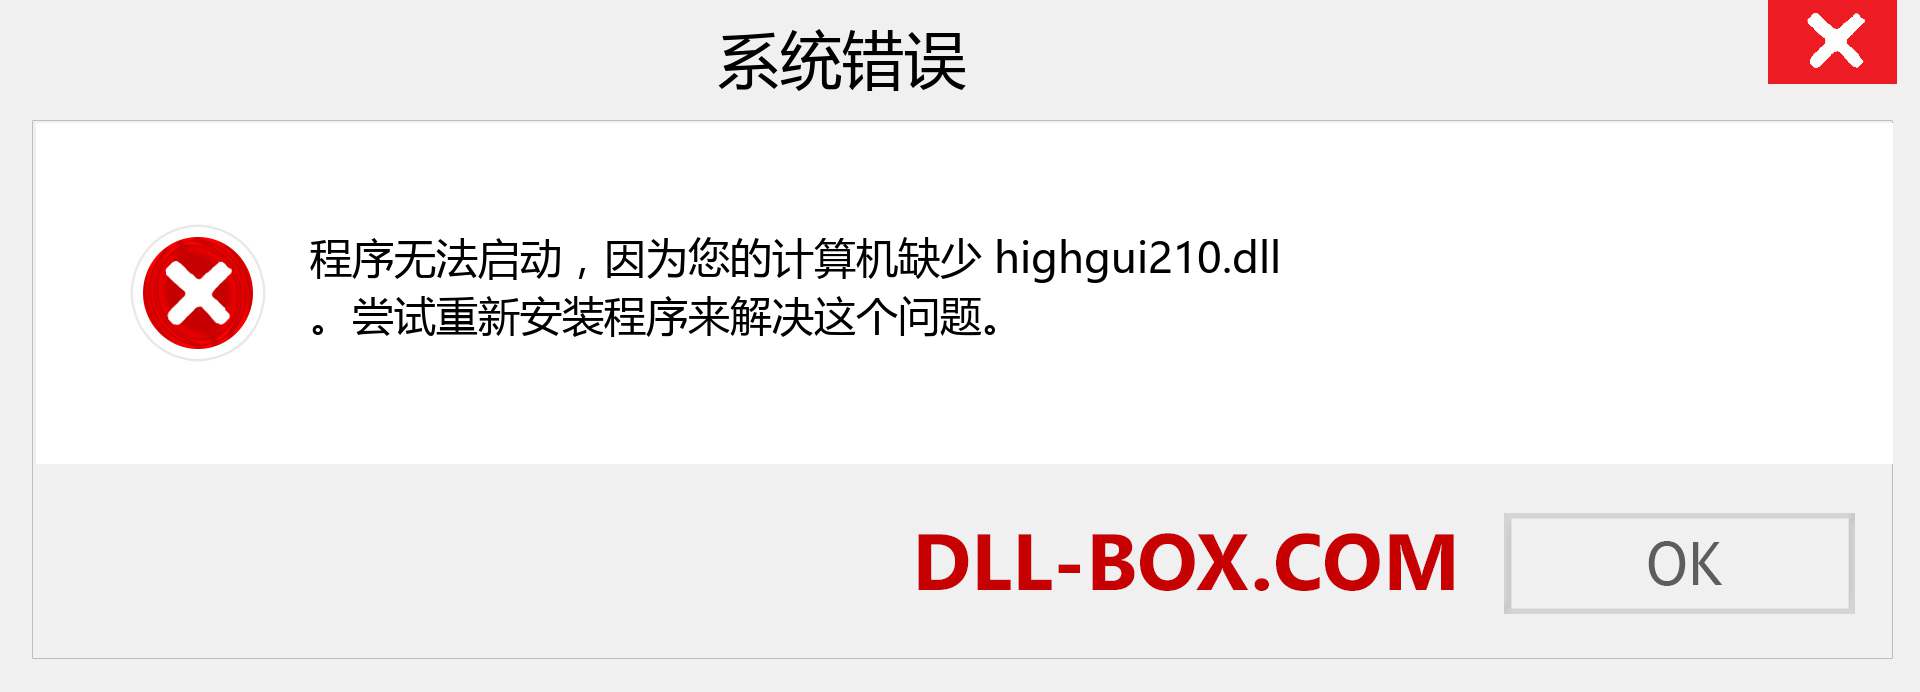 highgui210.dll 文件丢失？。 适用于 Windows 7、8、10 的下载 - 修复 Windows、照片、图像上的 highgui210 dll 丢失错误